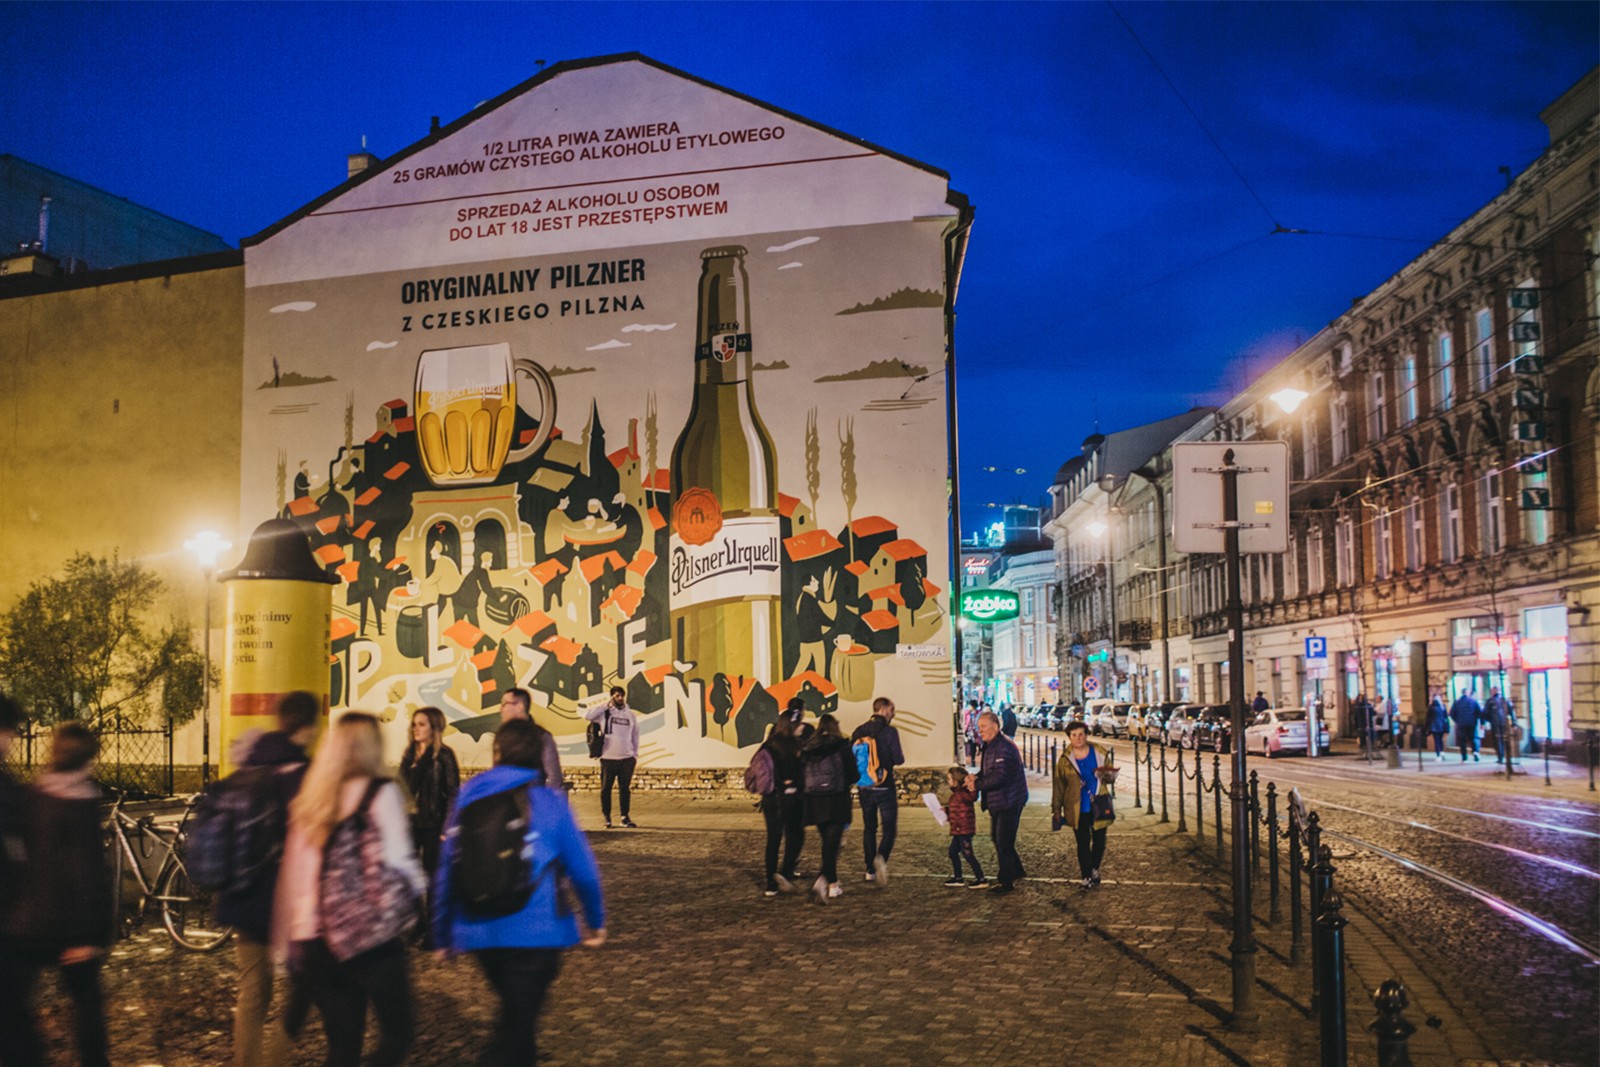 Mural reklamujący piwo pilzner dla marki Pilsner Urquell w Krakowie | Oryginalny pilzner z czeskiego Pilzna | Portfolio